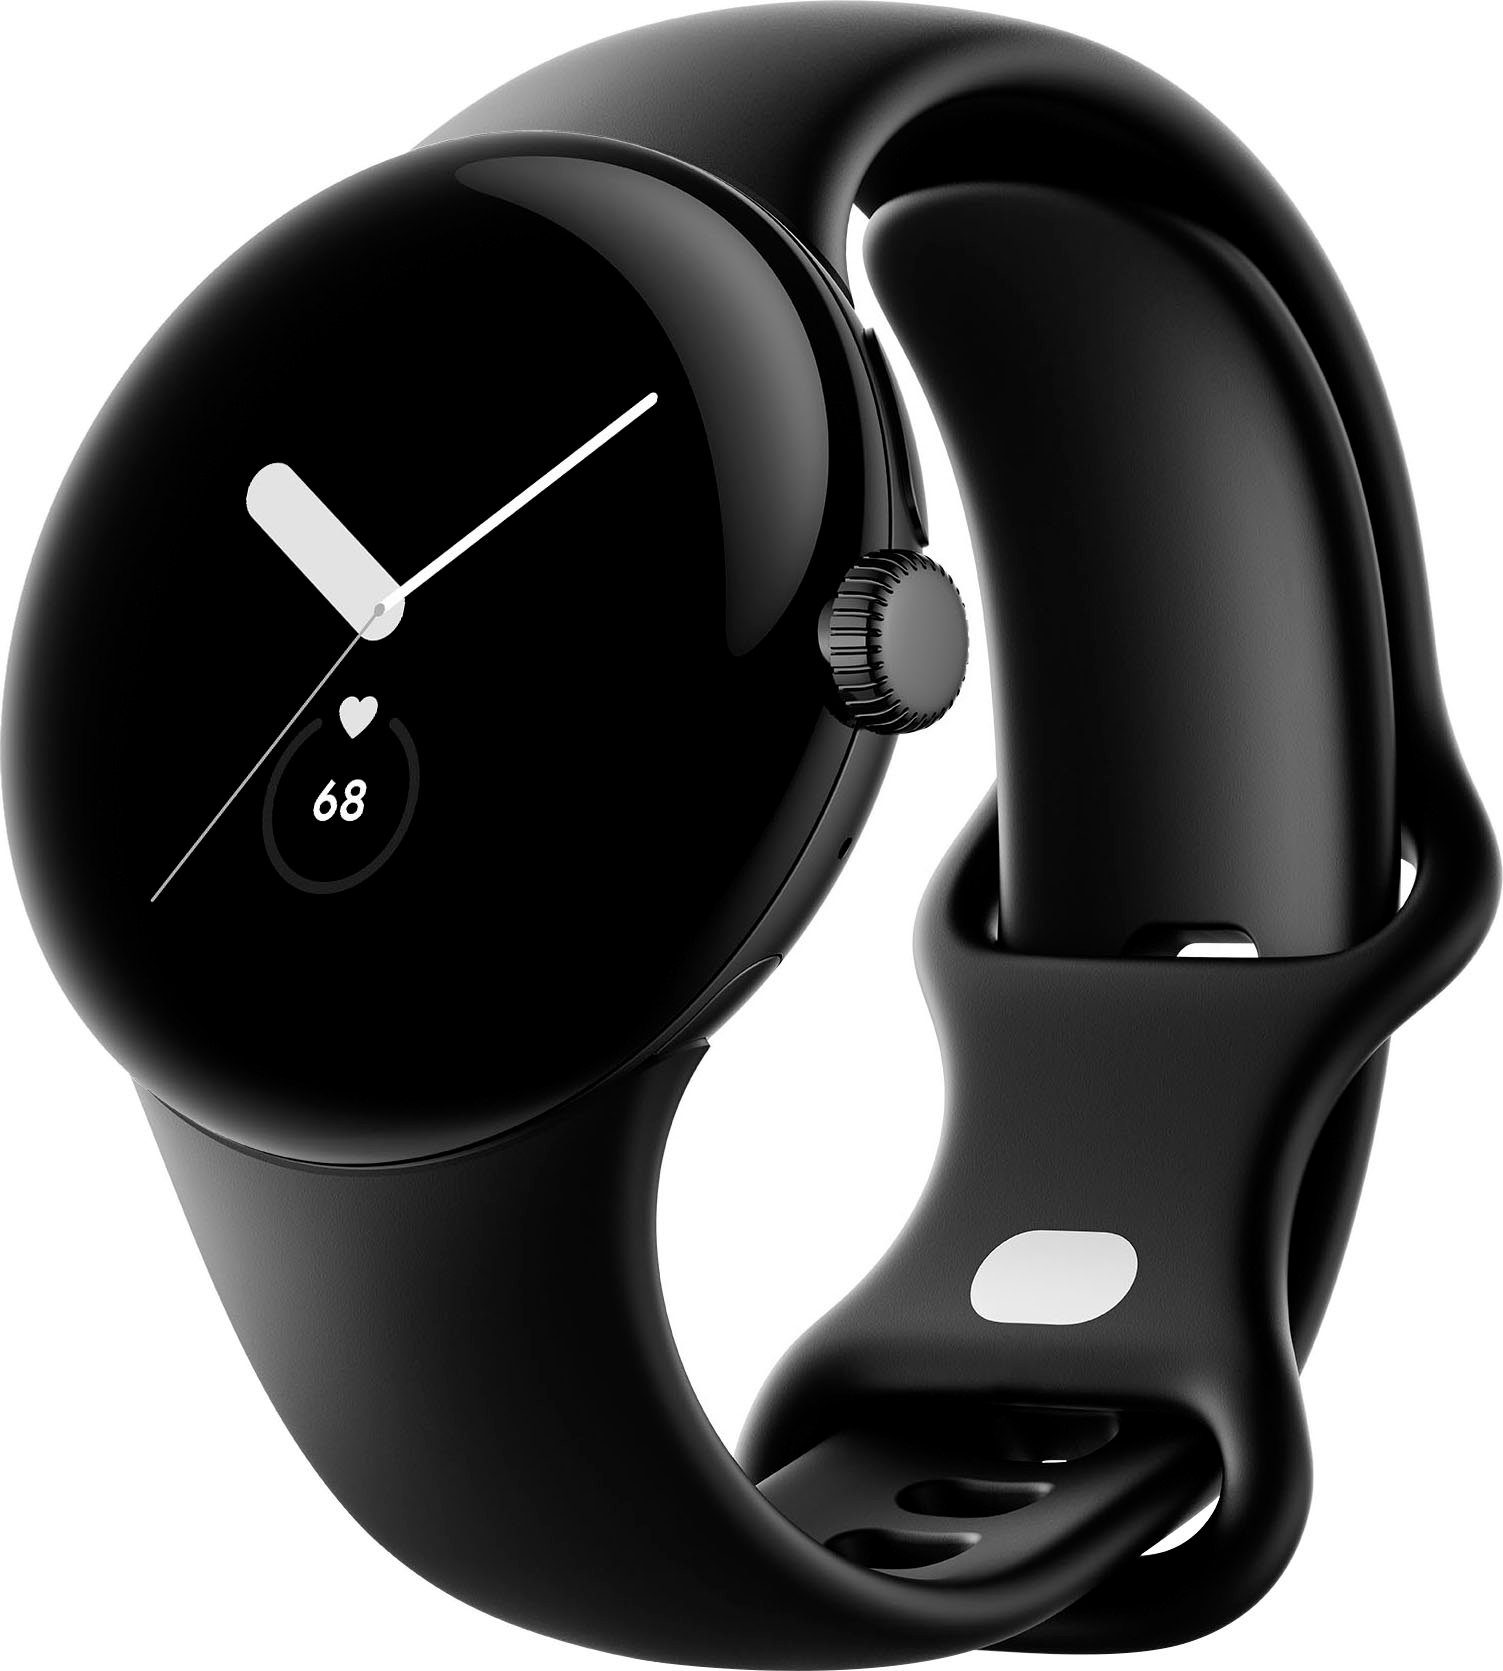 Google Pixel Watch Wifi Smartwatch (4,1 cm/1,61 Zoll, Wear OS by Google) schwarz | schwarz